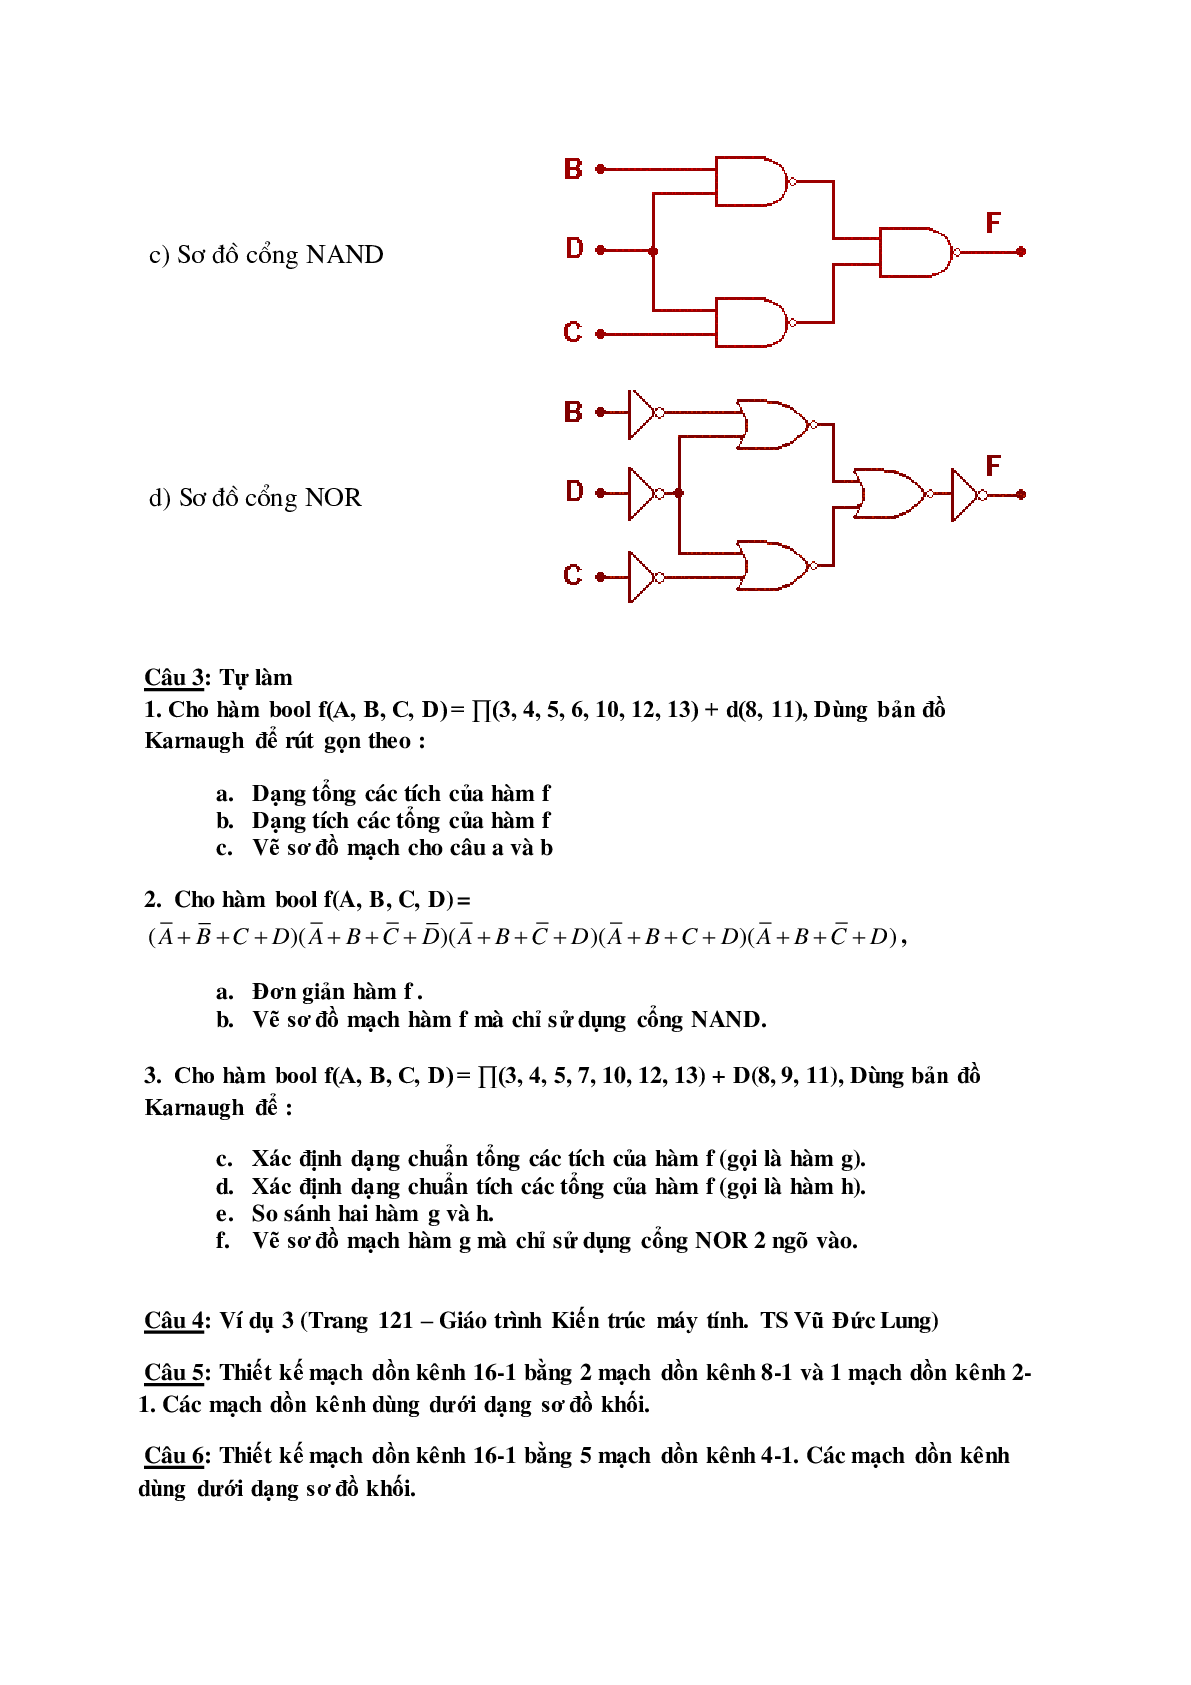 Ngân hàng bài tập Kiến trúc máy tính (có lời giải) hay, chi tiết nhất (trang 7)